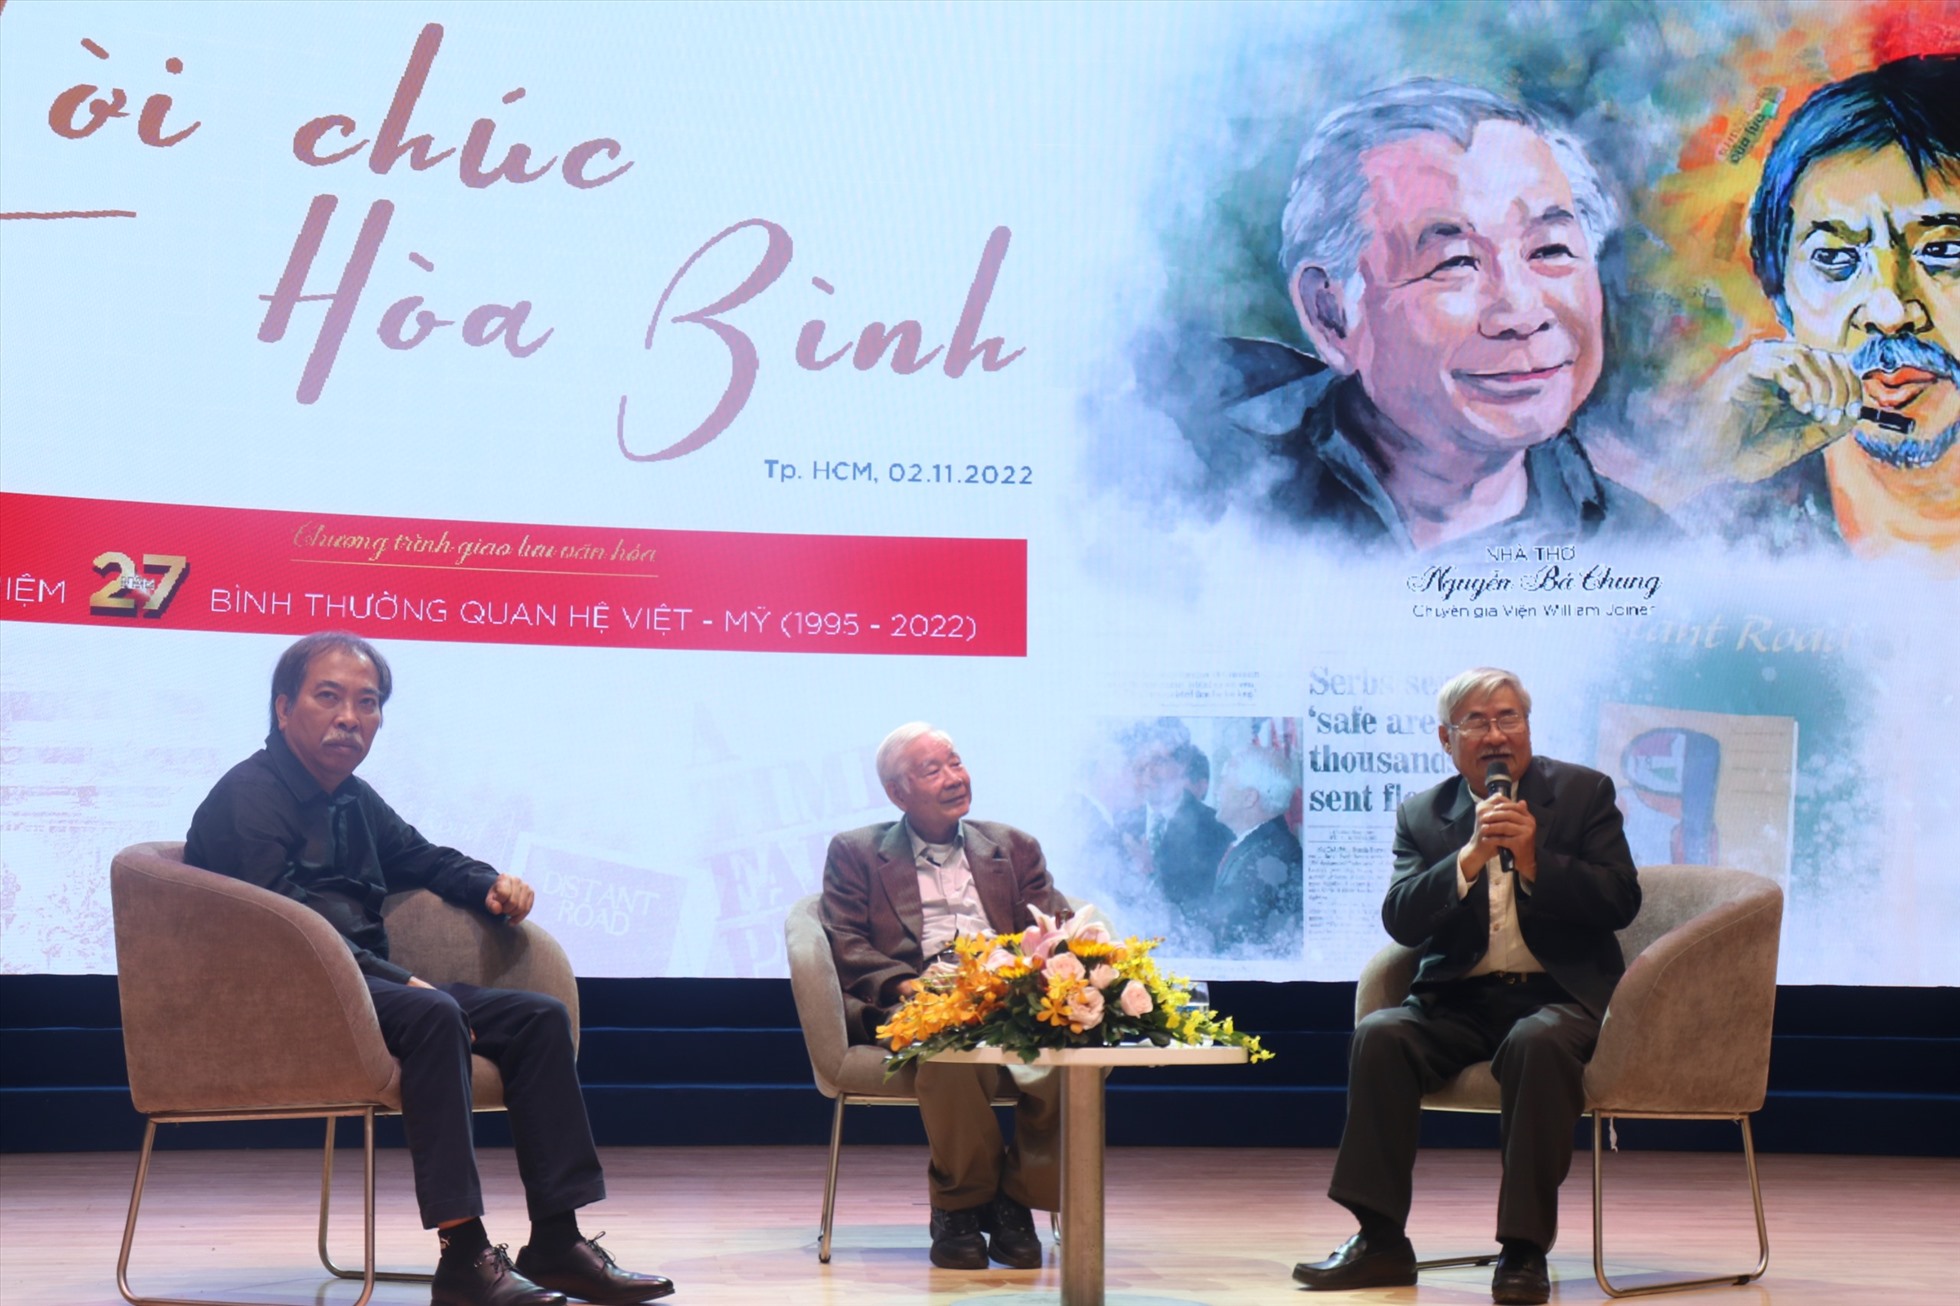 Các nhà văn, nhà thơ lão thành xuất hiện tại chương trình “Lời chúc hòa bình“. Ảnh: Việt Phong